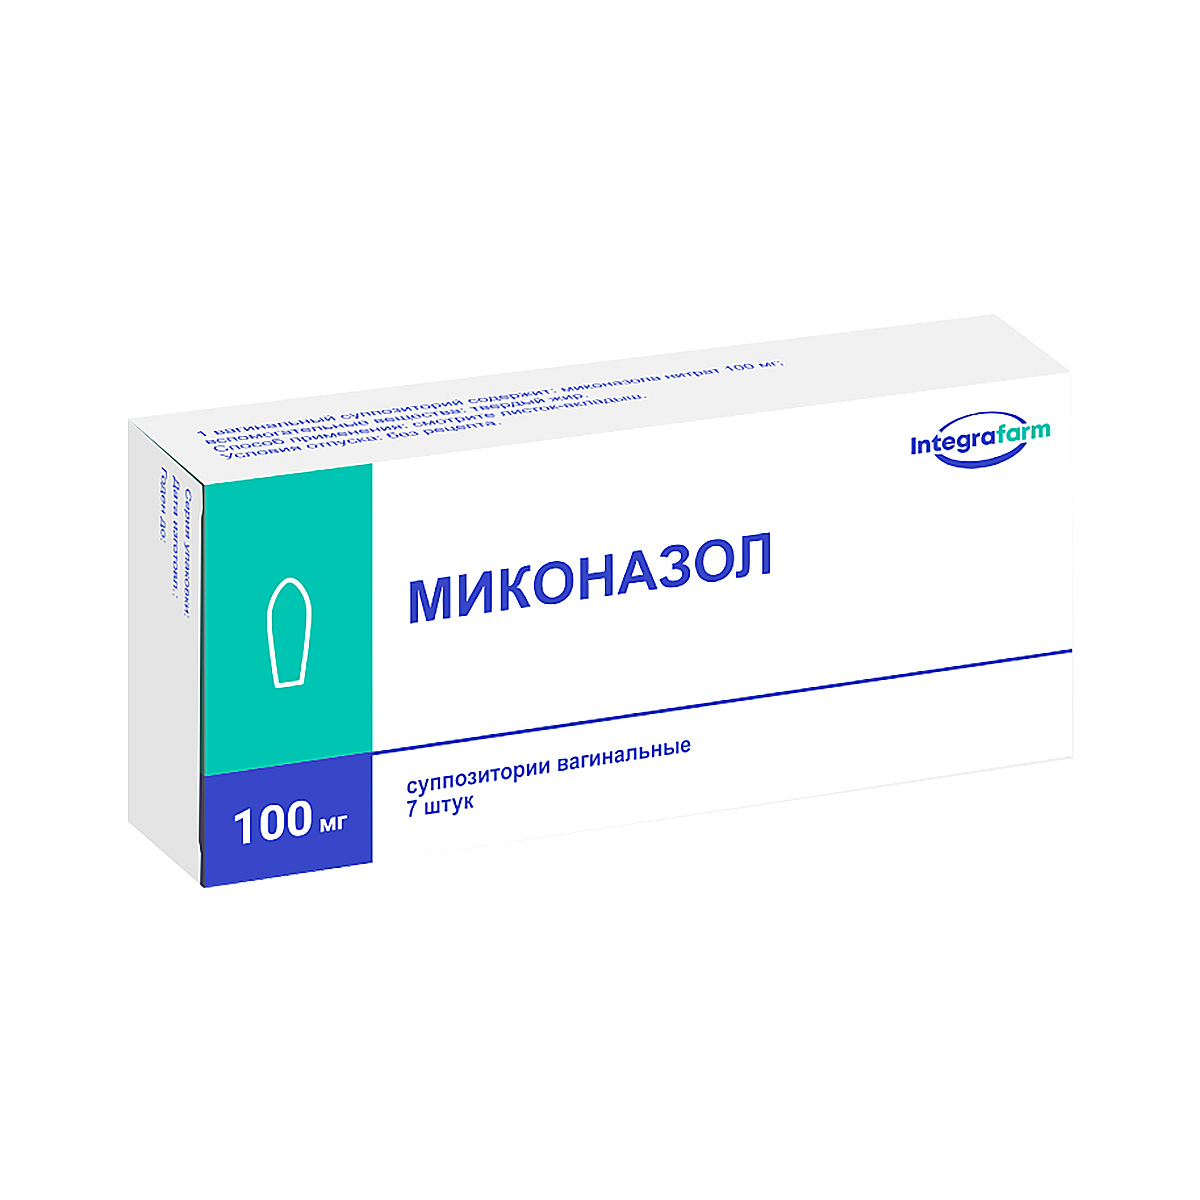 Миконазол 100 мг суппозитории вагинальные 7 шт